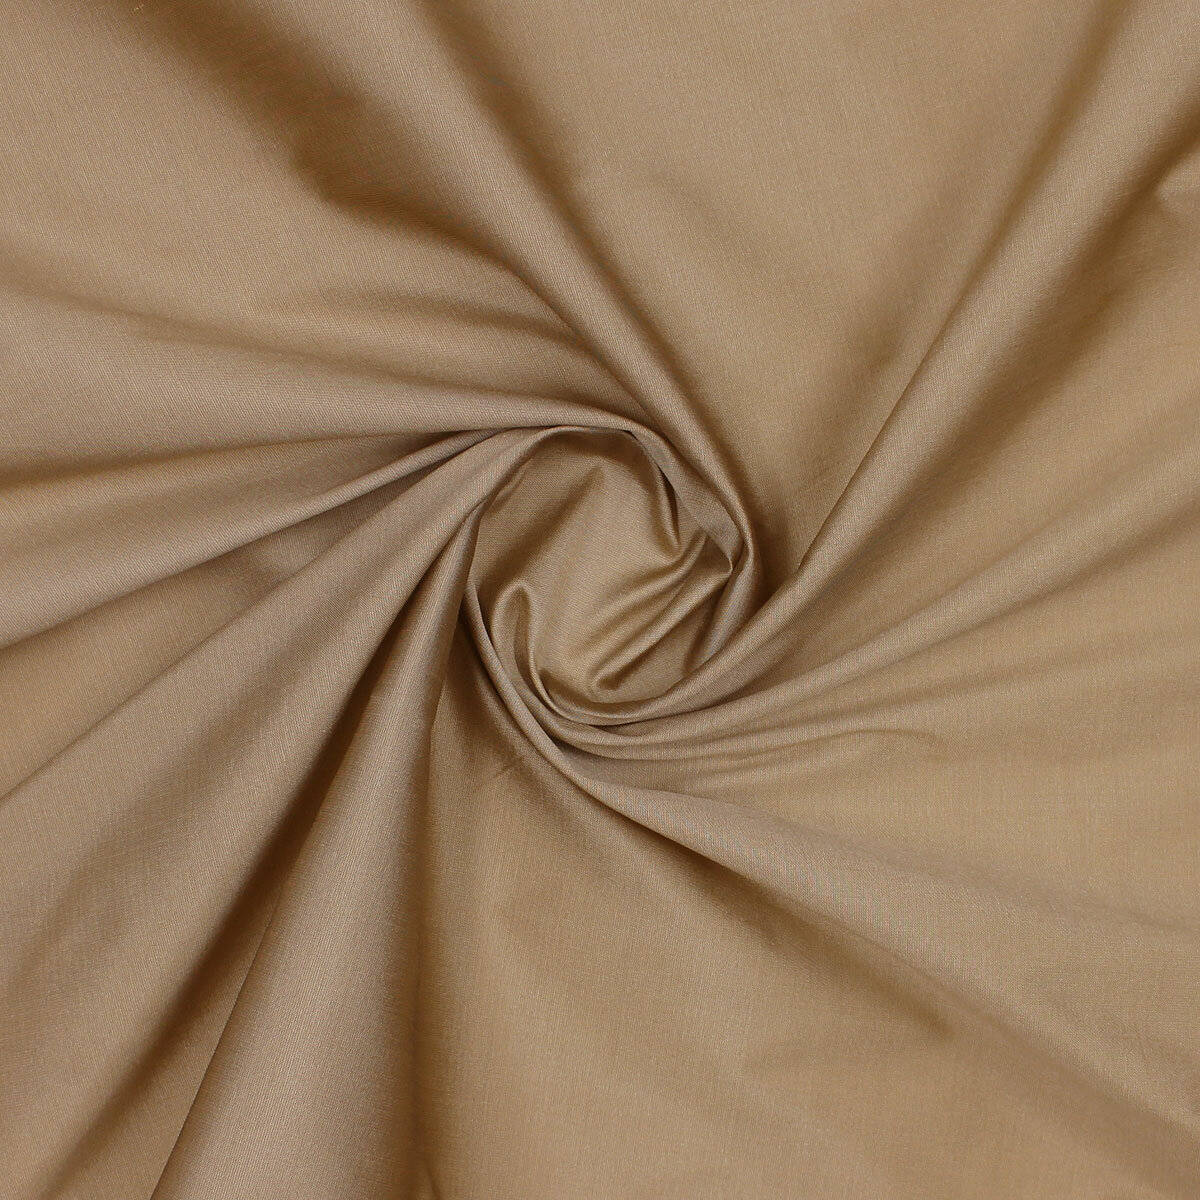 Ткань для шитья и рукоделия, тафта, бежевый цвет, плотность 70 гр/м2, 140х100 см